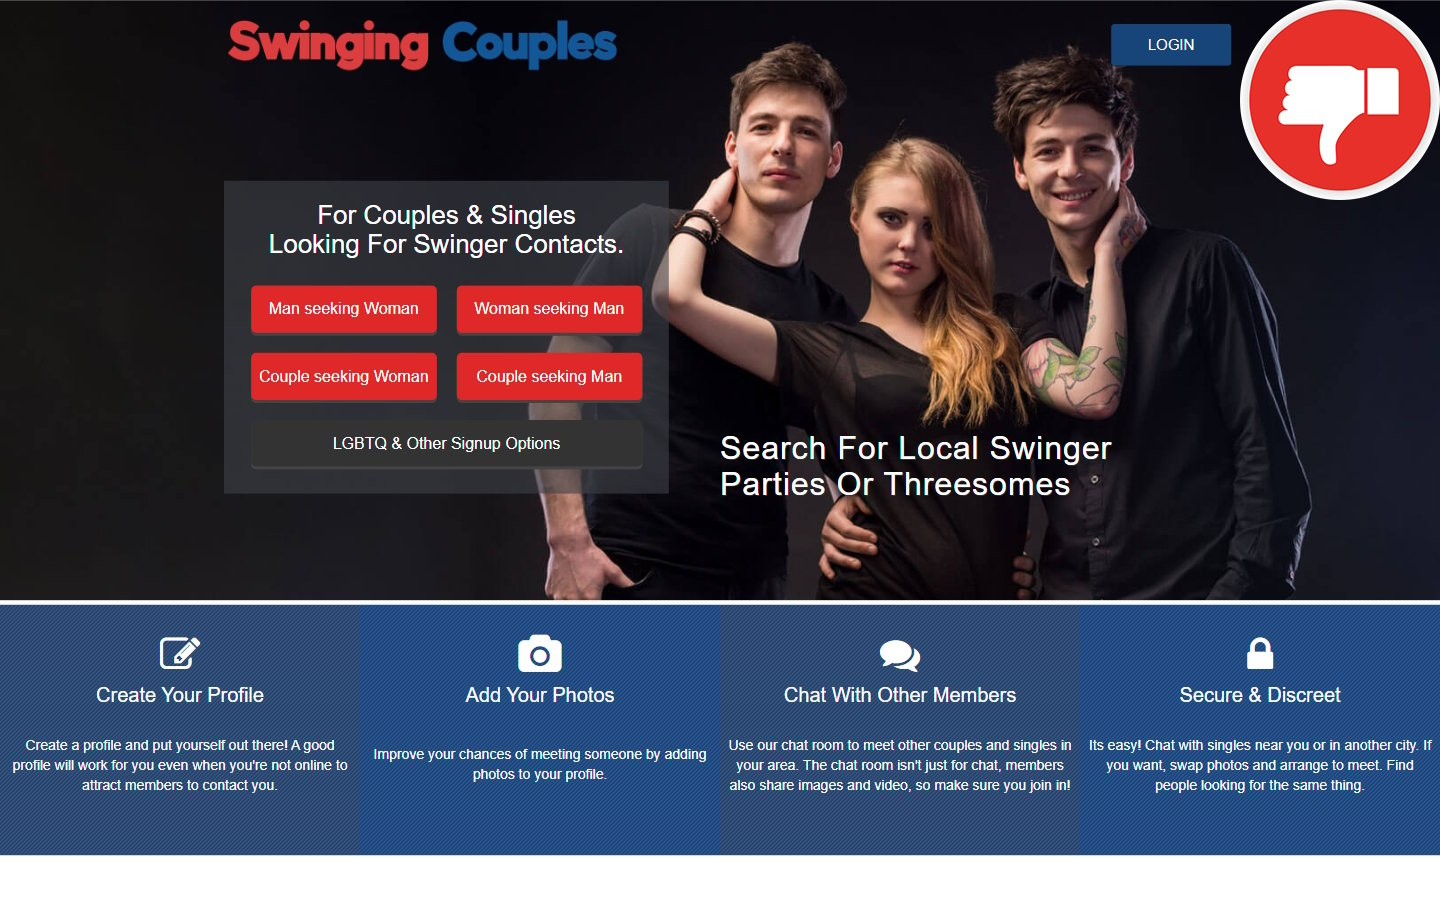 Review Swinging-Couples.com Scam